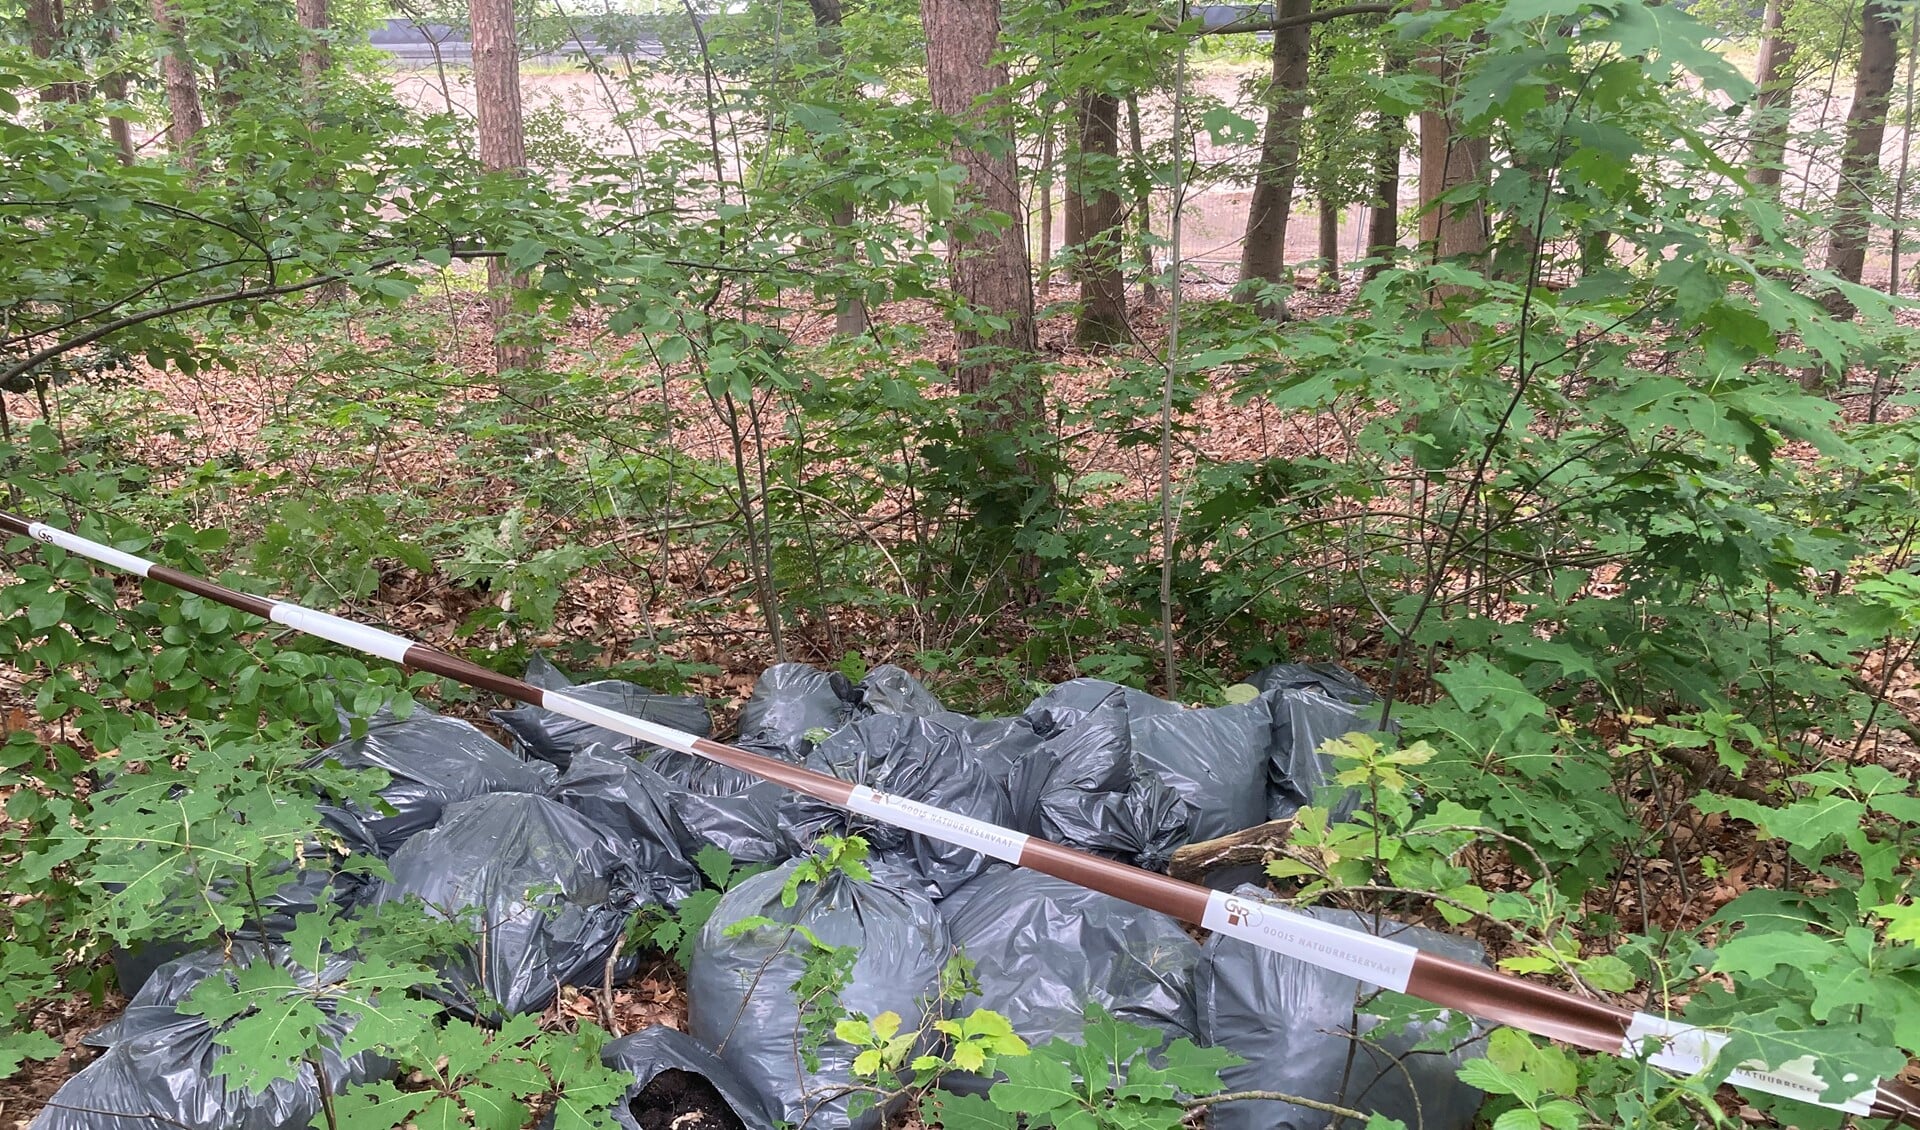 Stapels met vuilniszakken worden er onder andere aangetroffen door de boswachters.